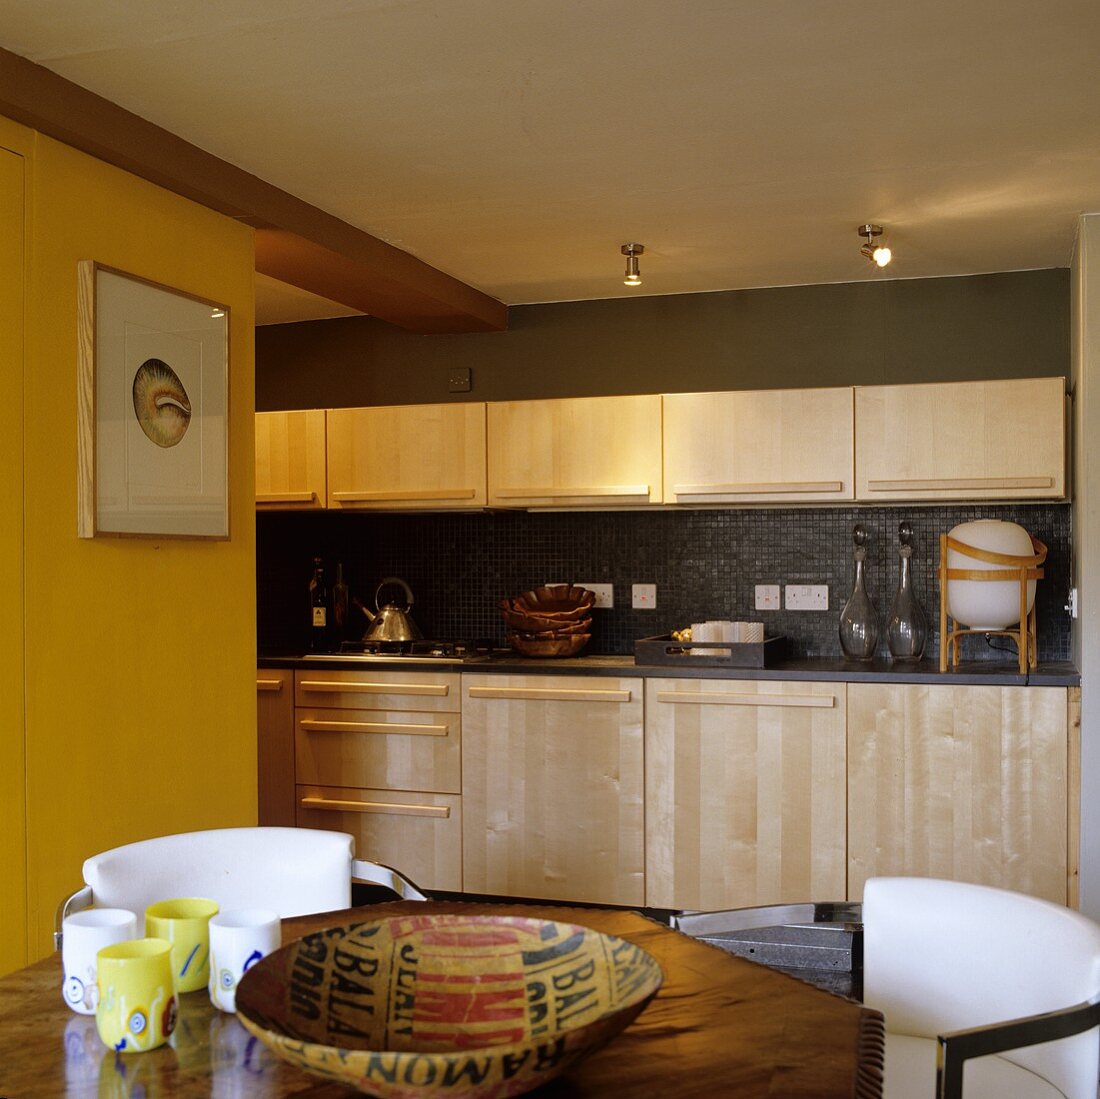 Einbauküche mit hellen Holzfronten und Holzgriffleisten vor dunkelgrauer Wand mit Deckenstrahler